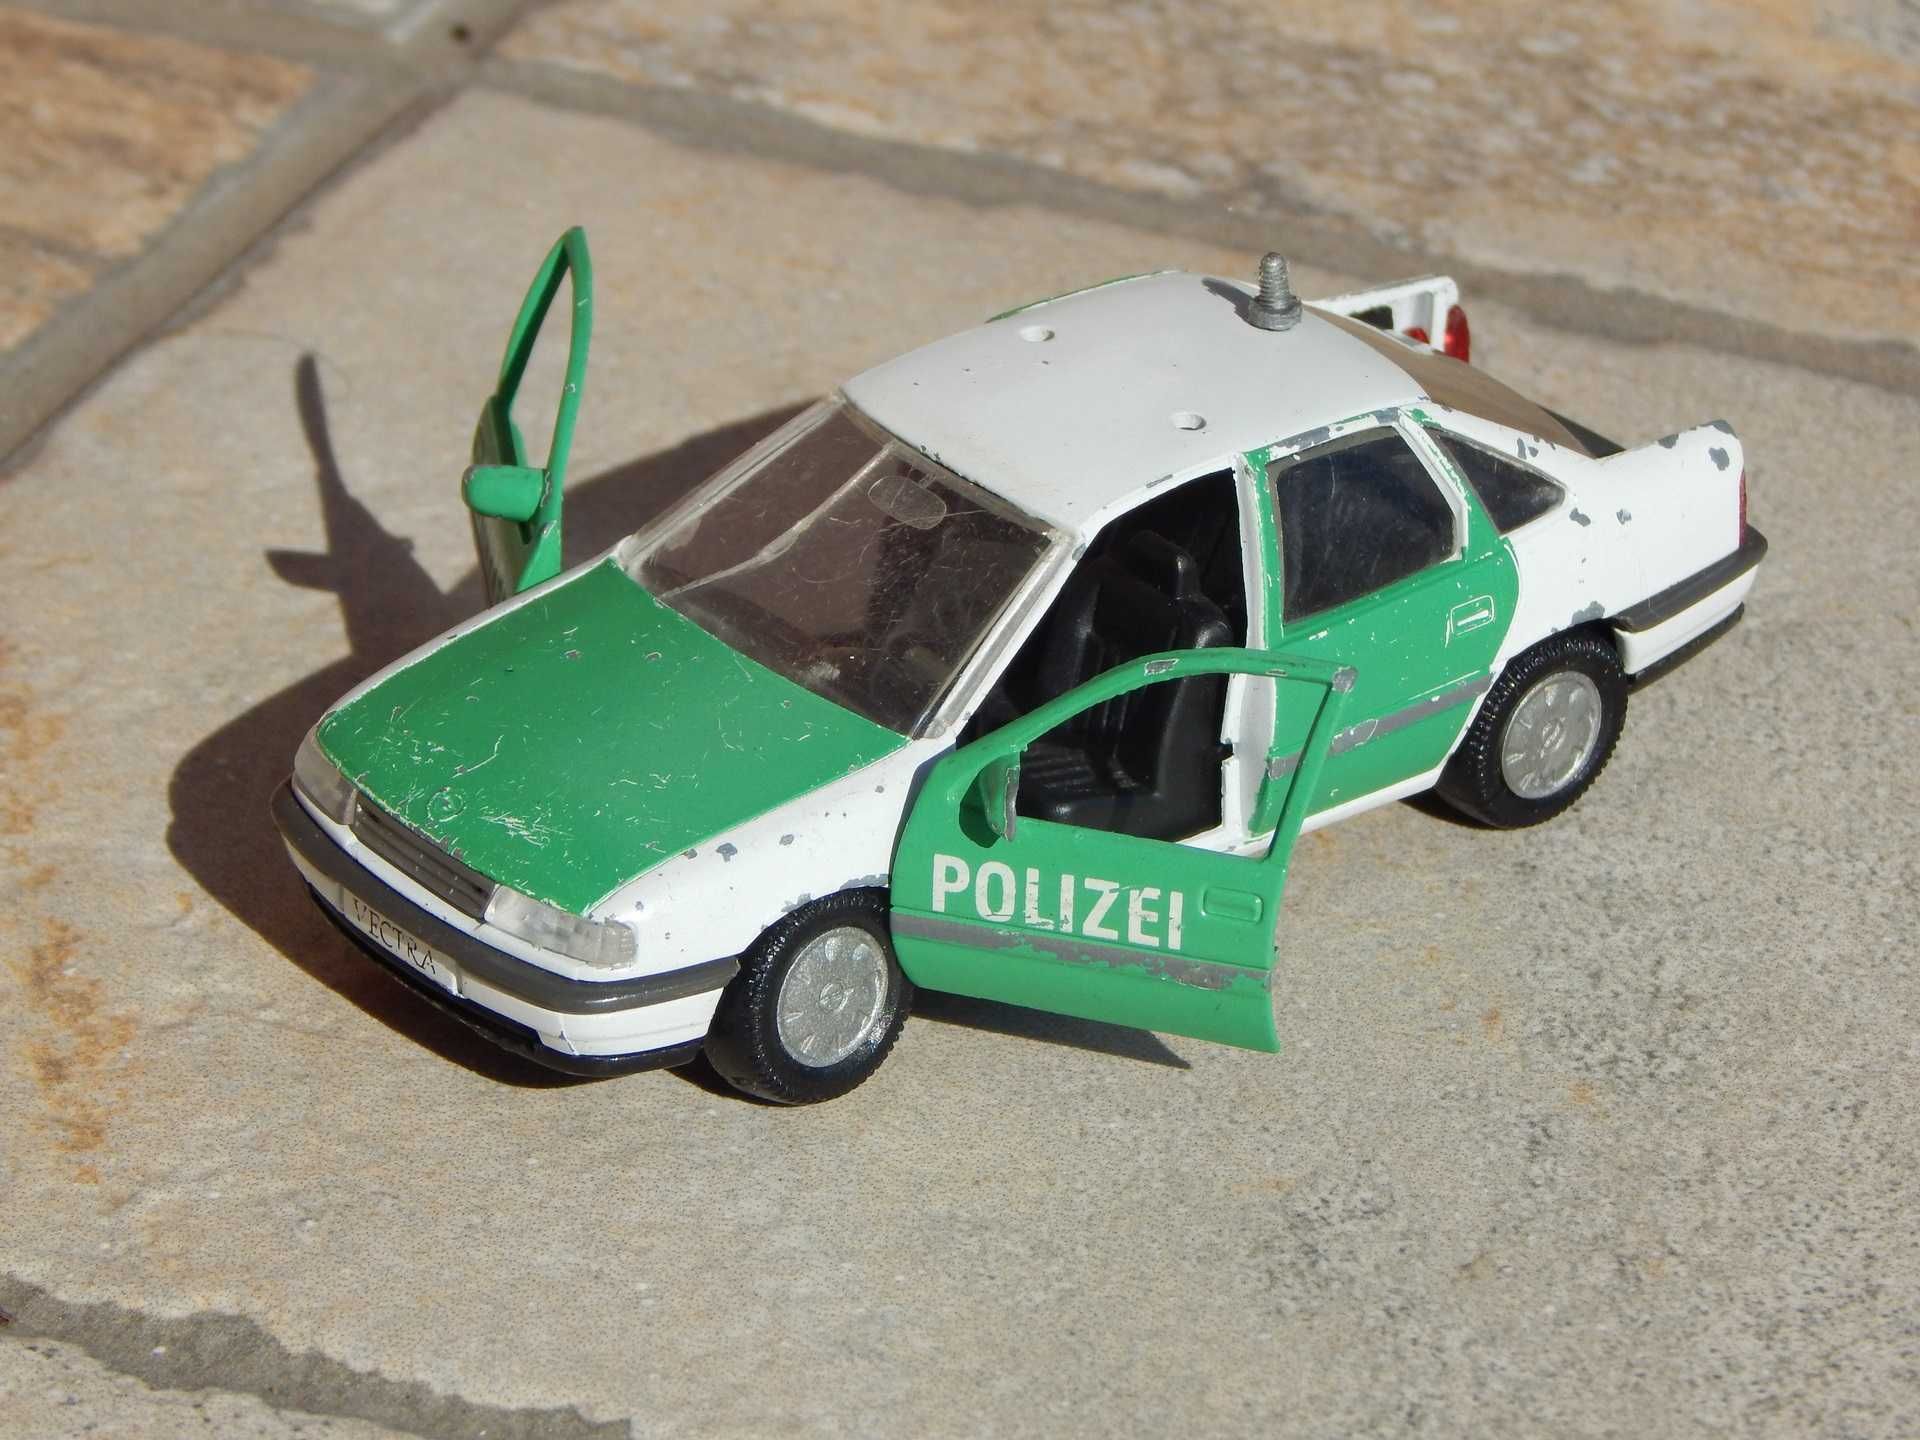 Macheta masina politie germana Opel Vectra A 1988 Gama 1:43 cu defecte